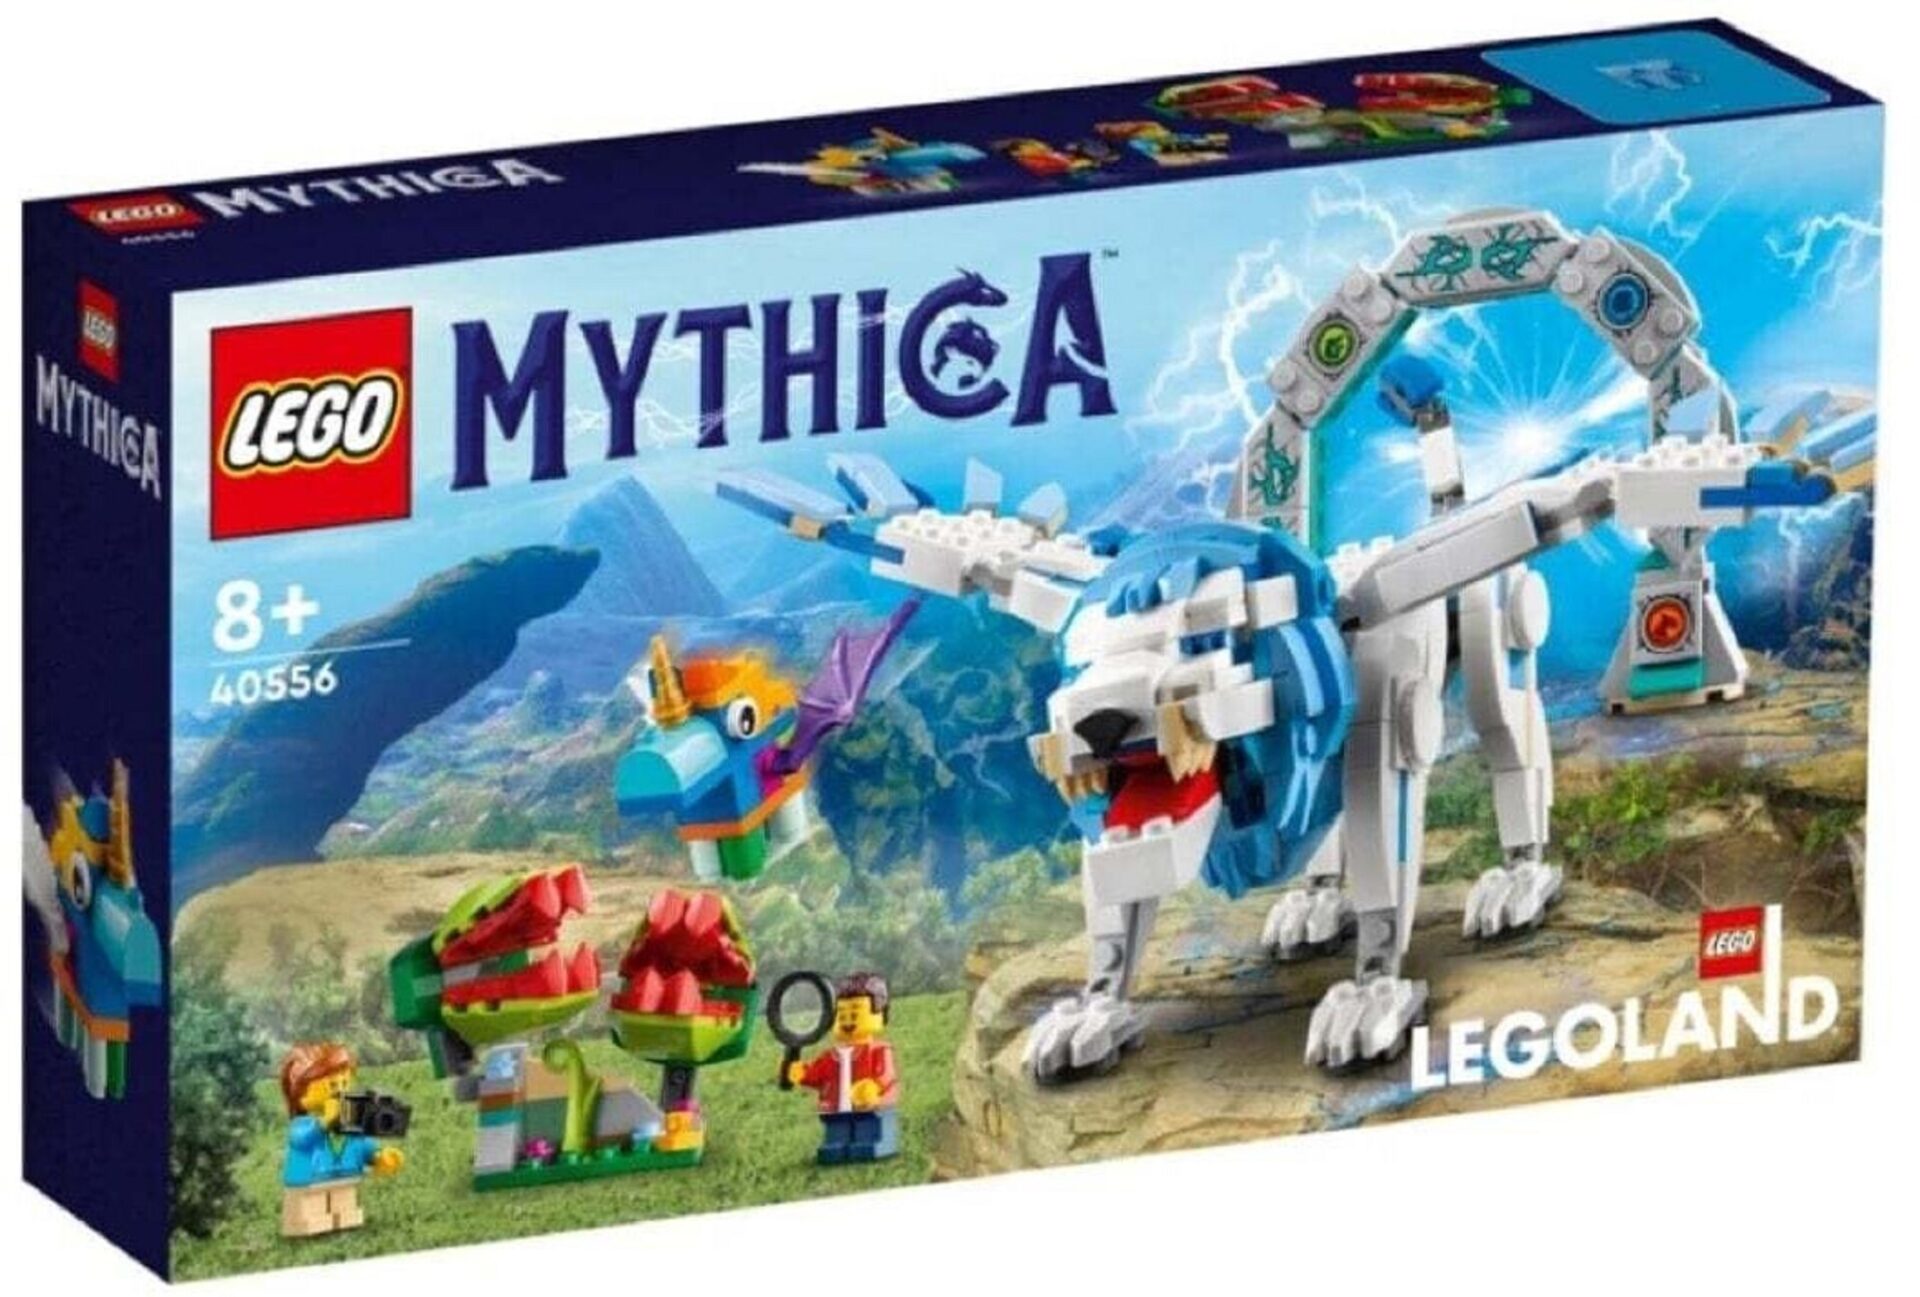 lego-legoland-mythica-40556.jpg